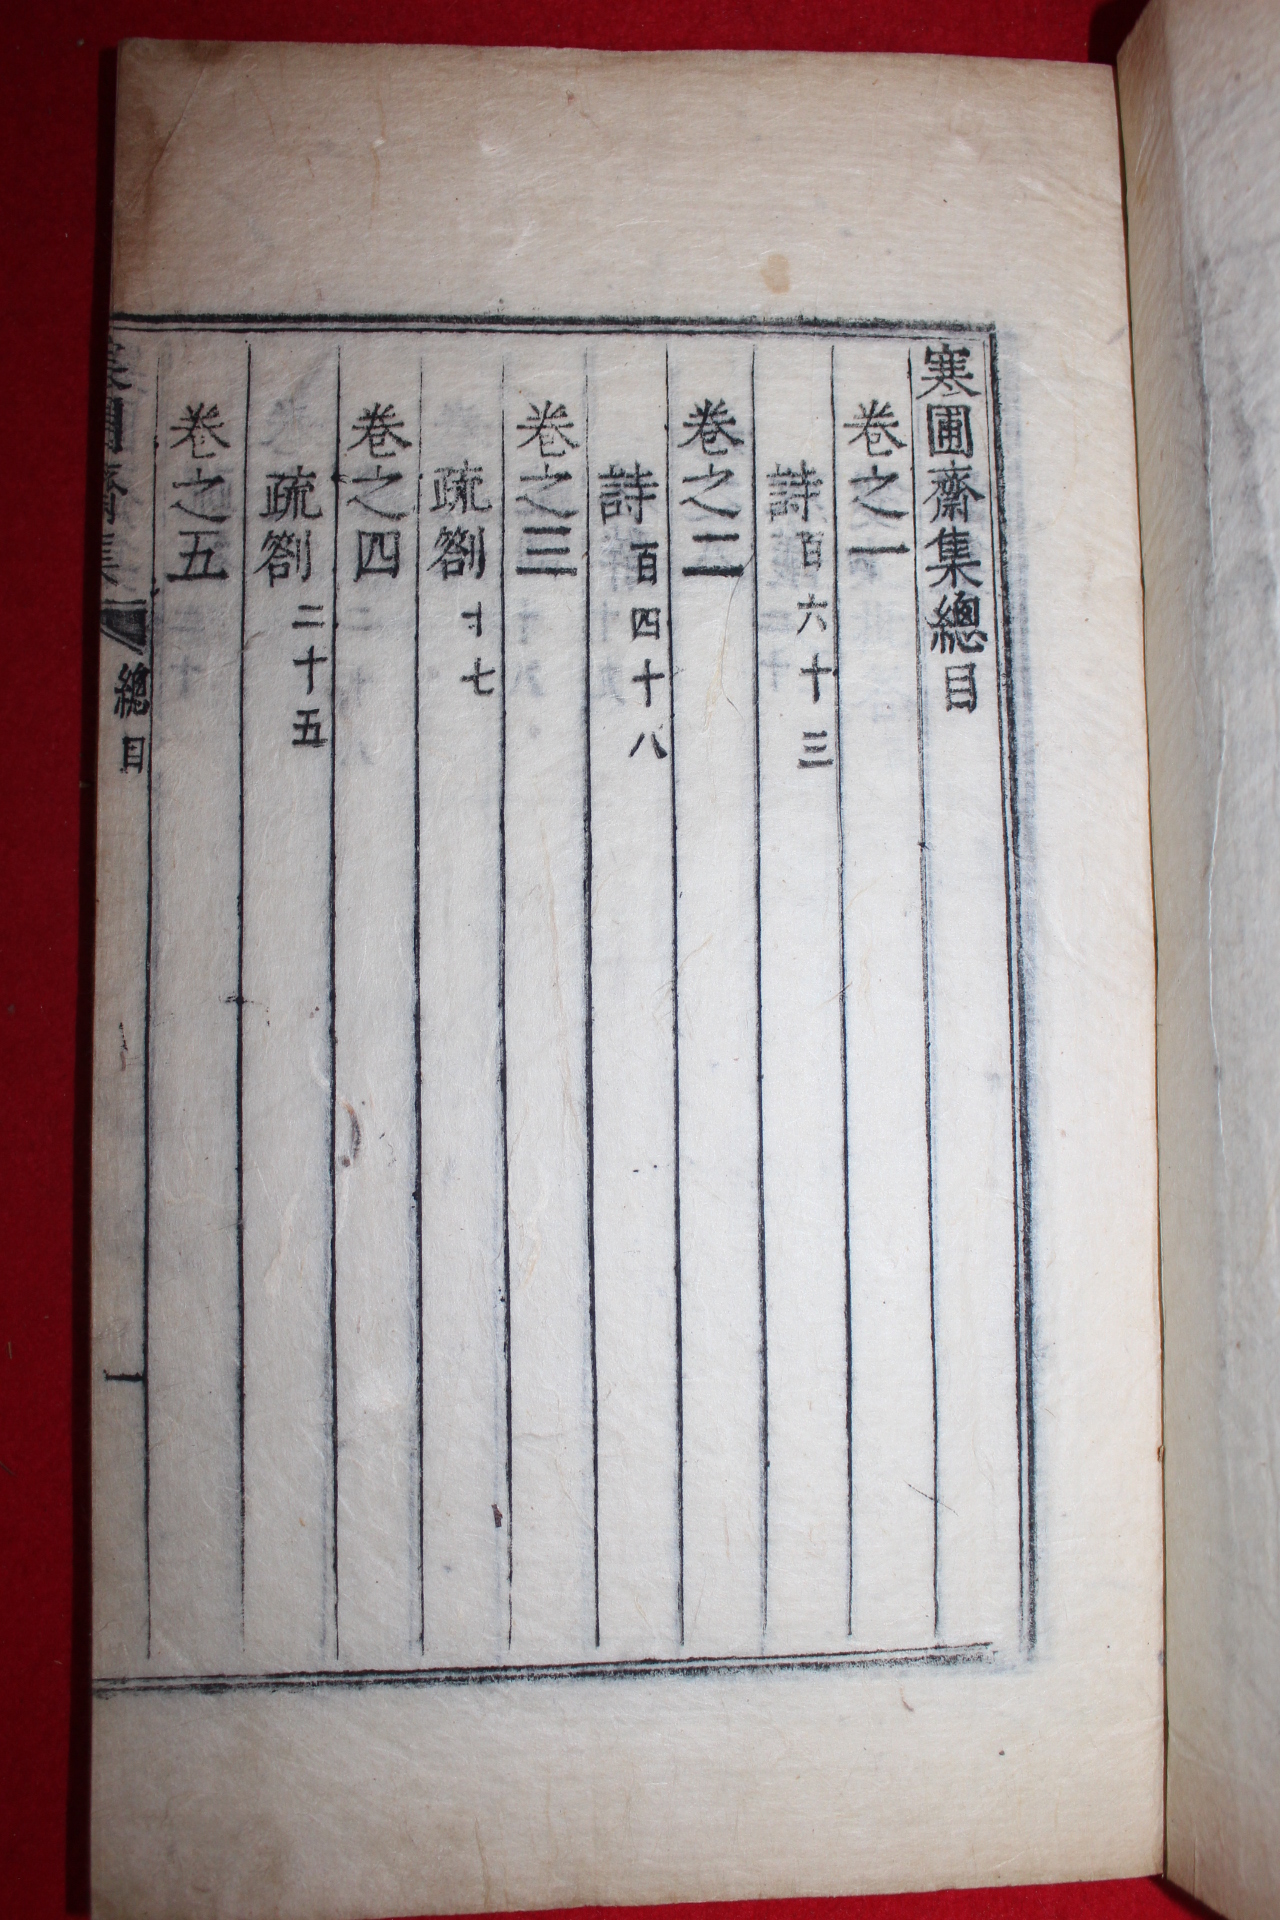 1758년 금속활자본(校書館印書體字) 이건명(李健命) 한포재집(寒圃齋集)권1,2  1책